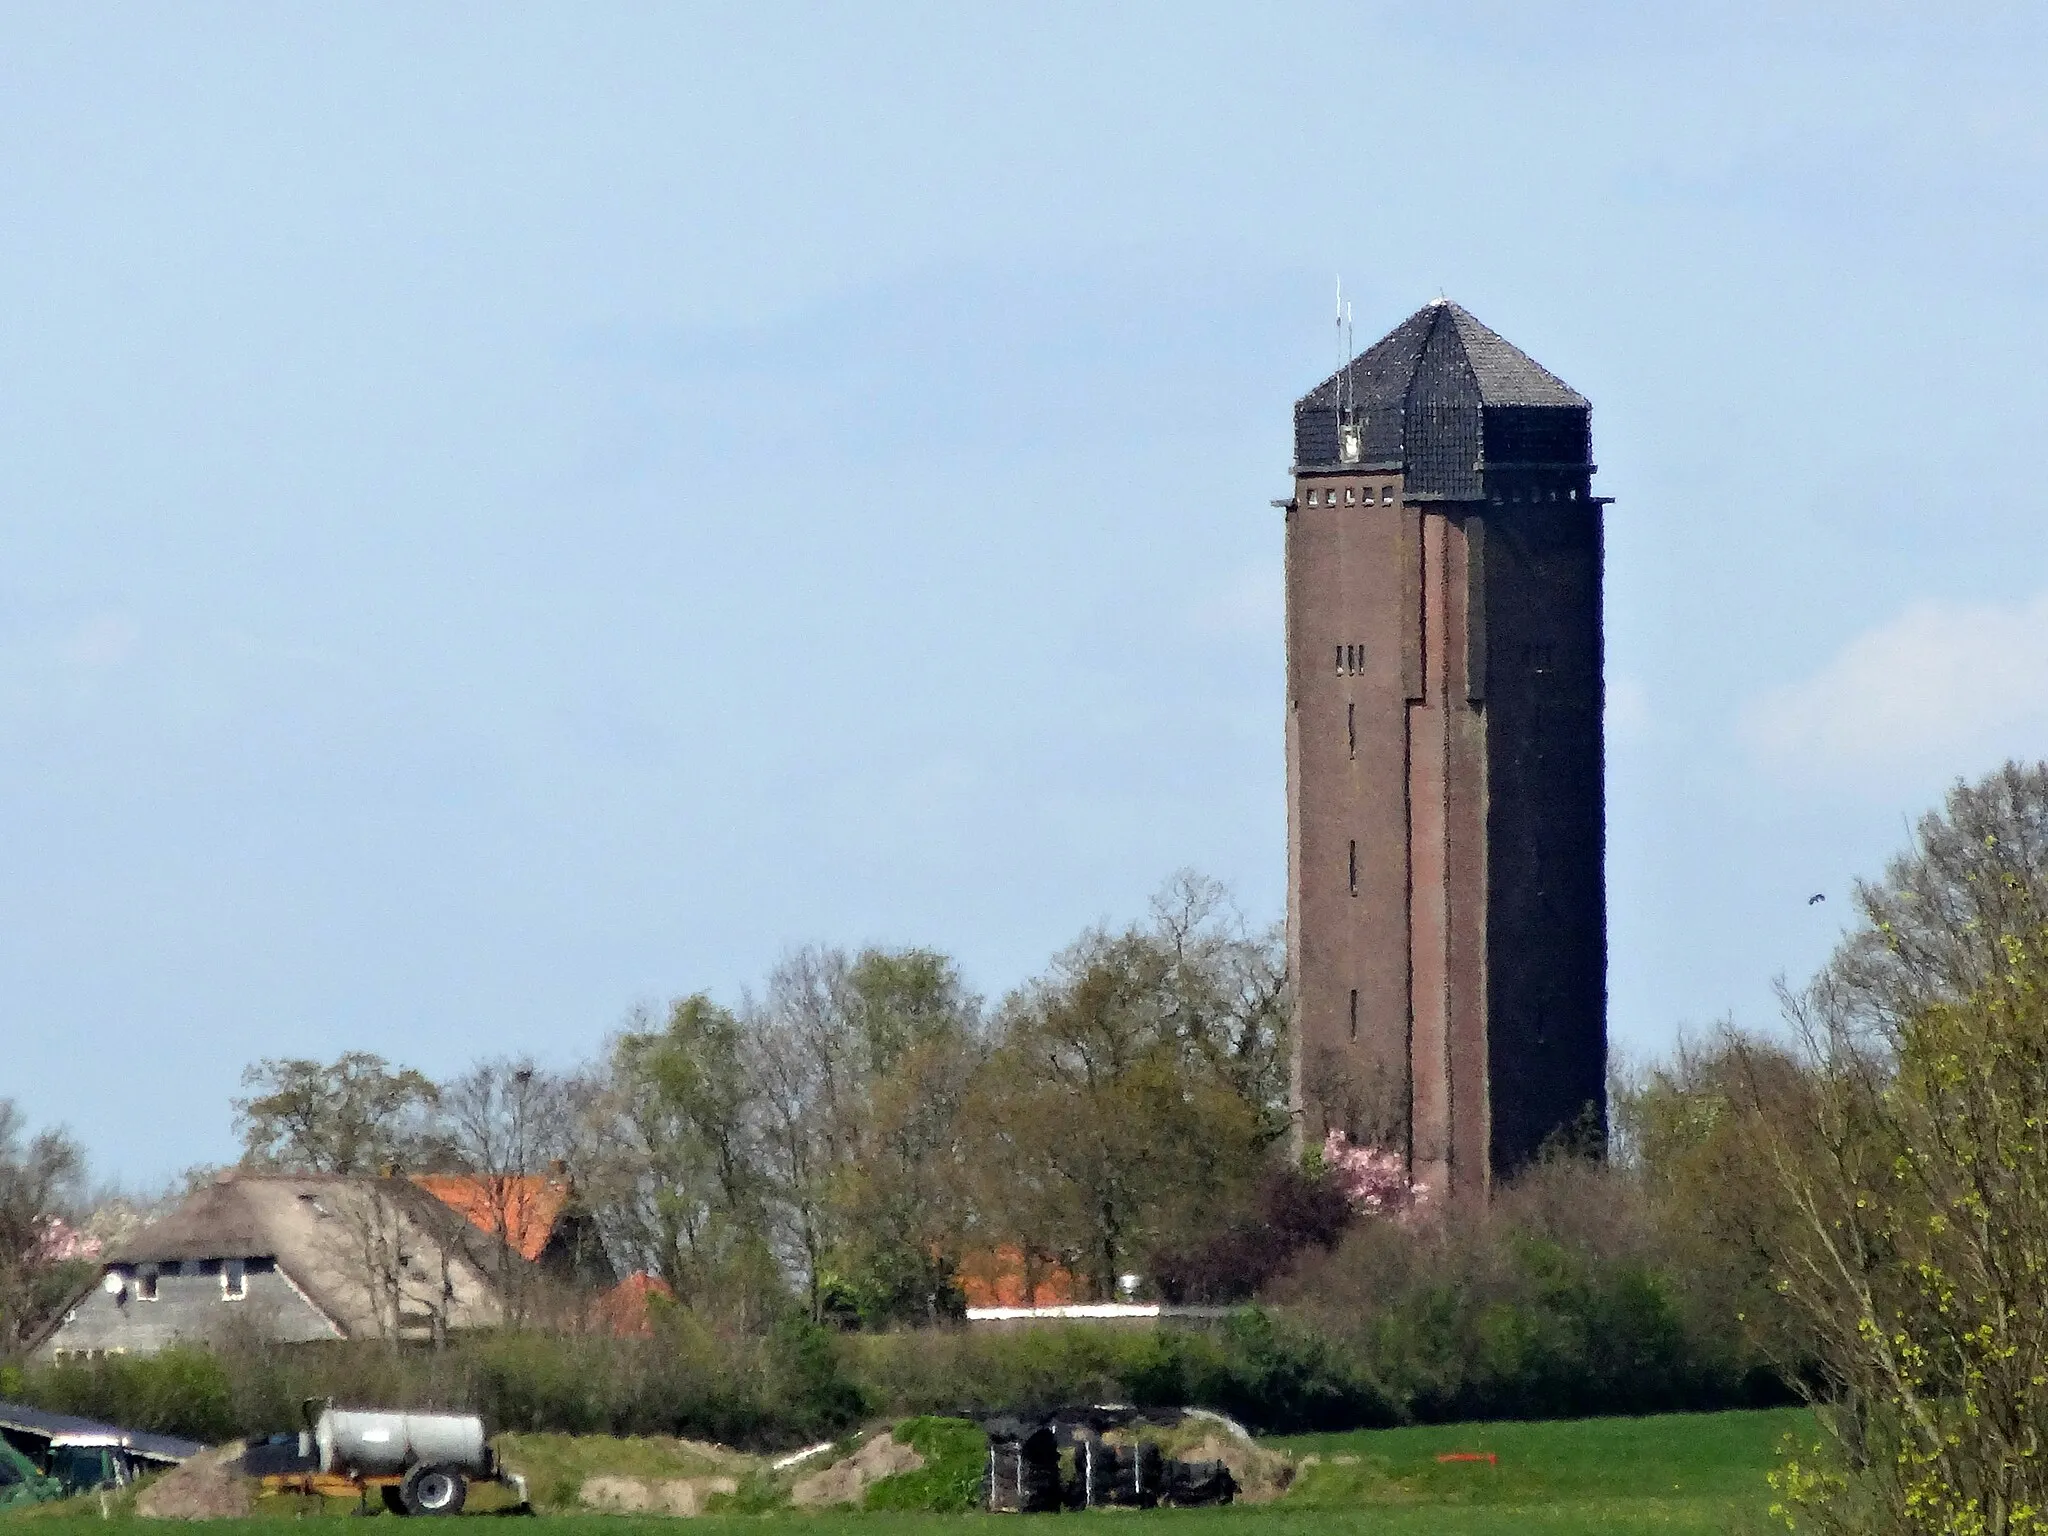 Image of Overijssel